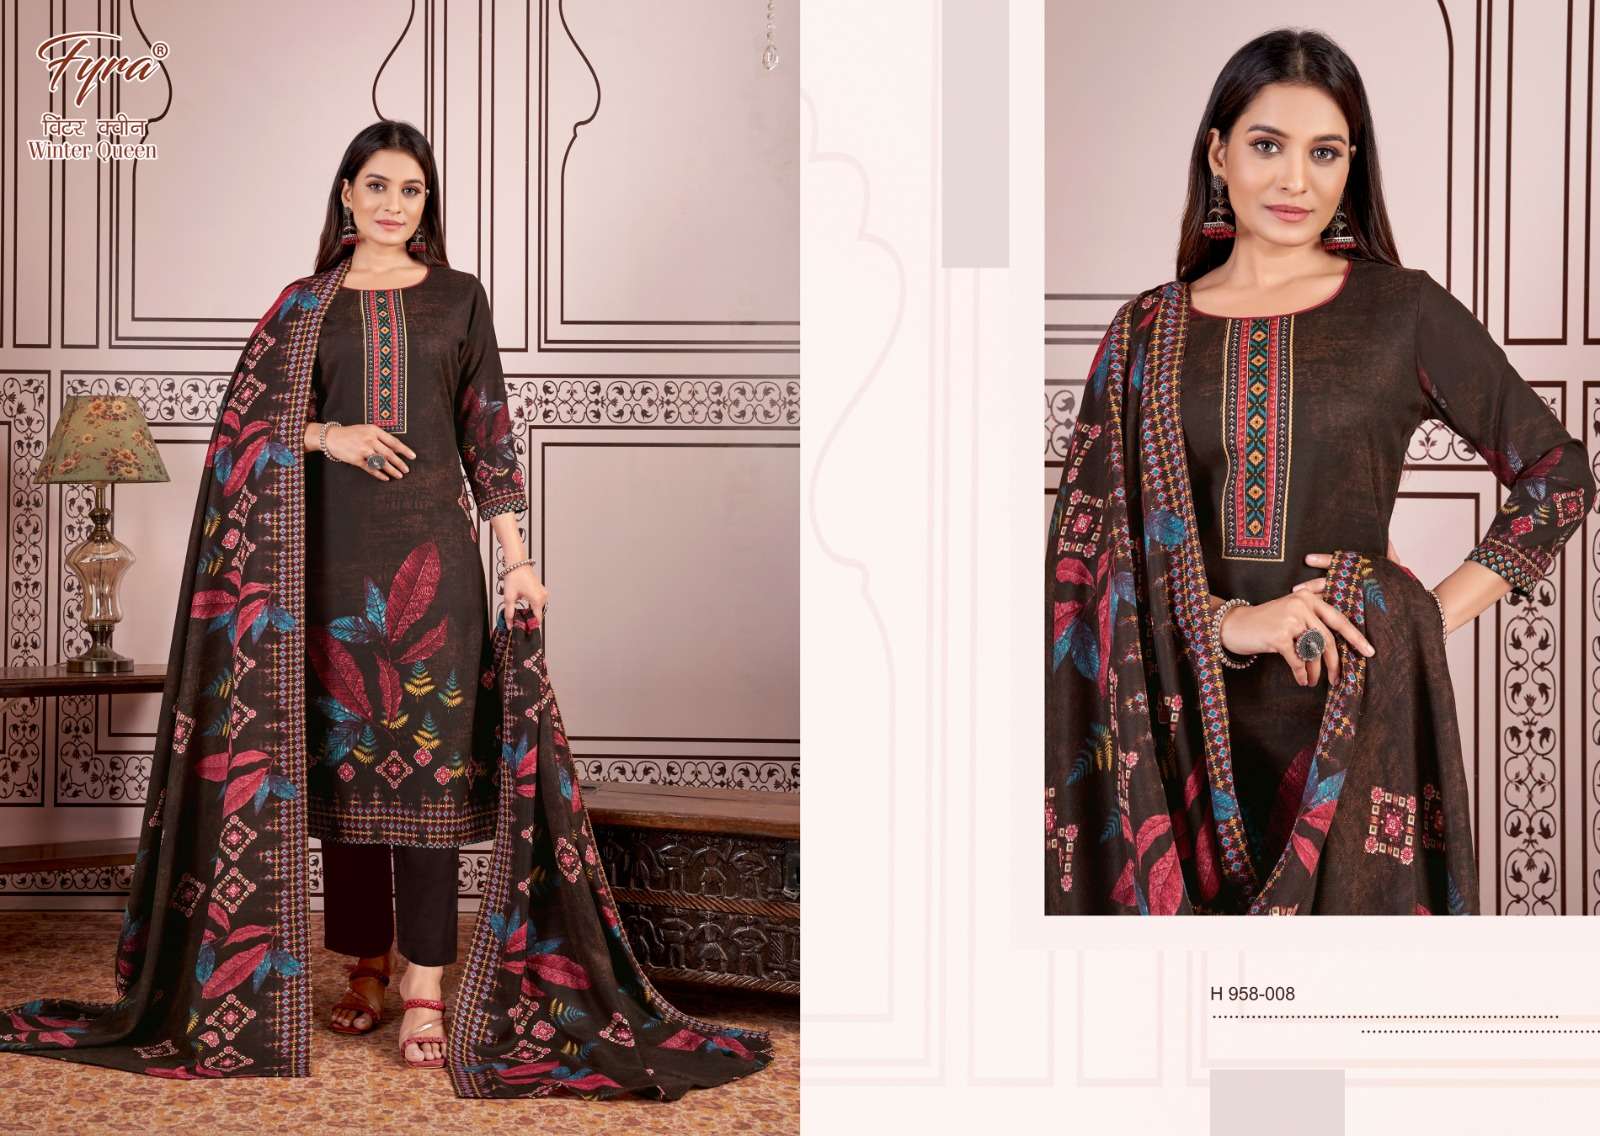 fyra designing winter queen  latest designer salwar kameez wholesaler surat gujarat